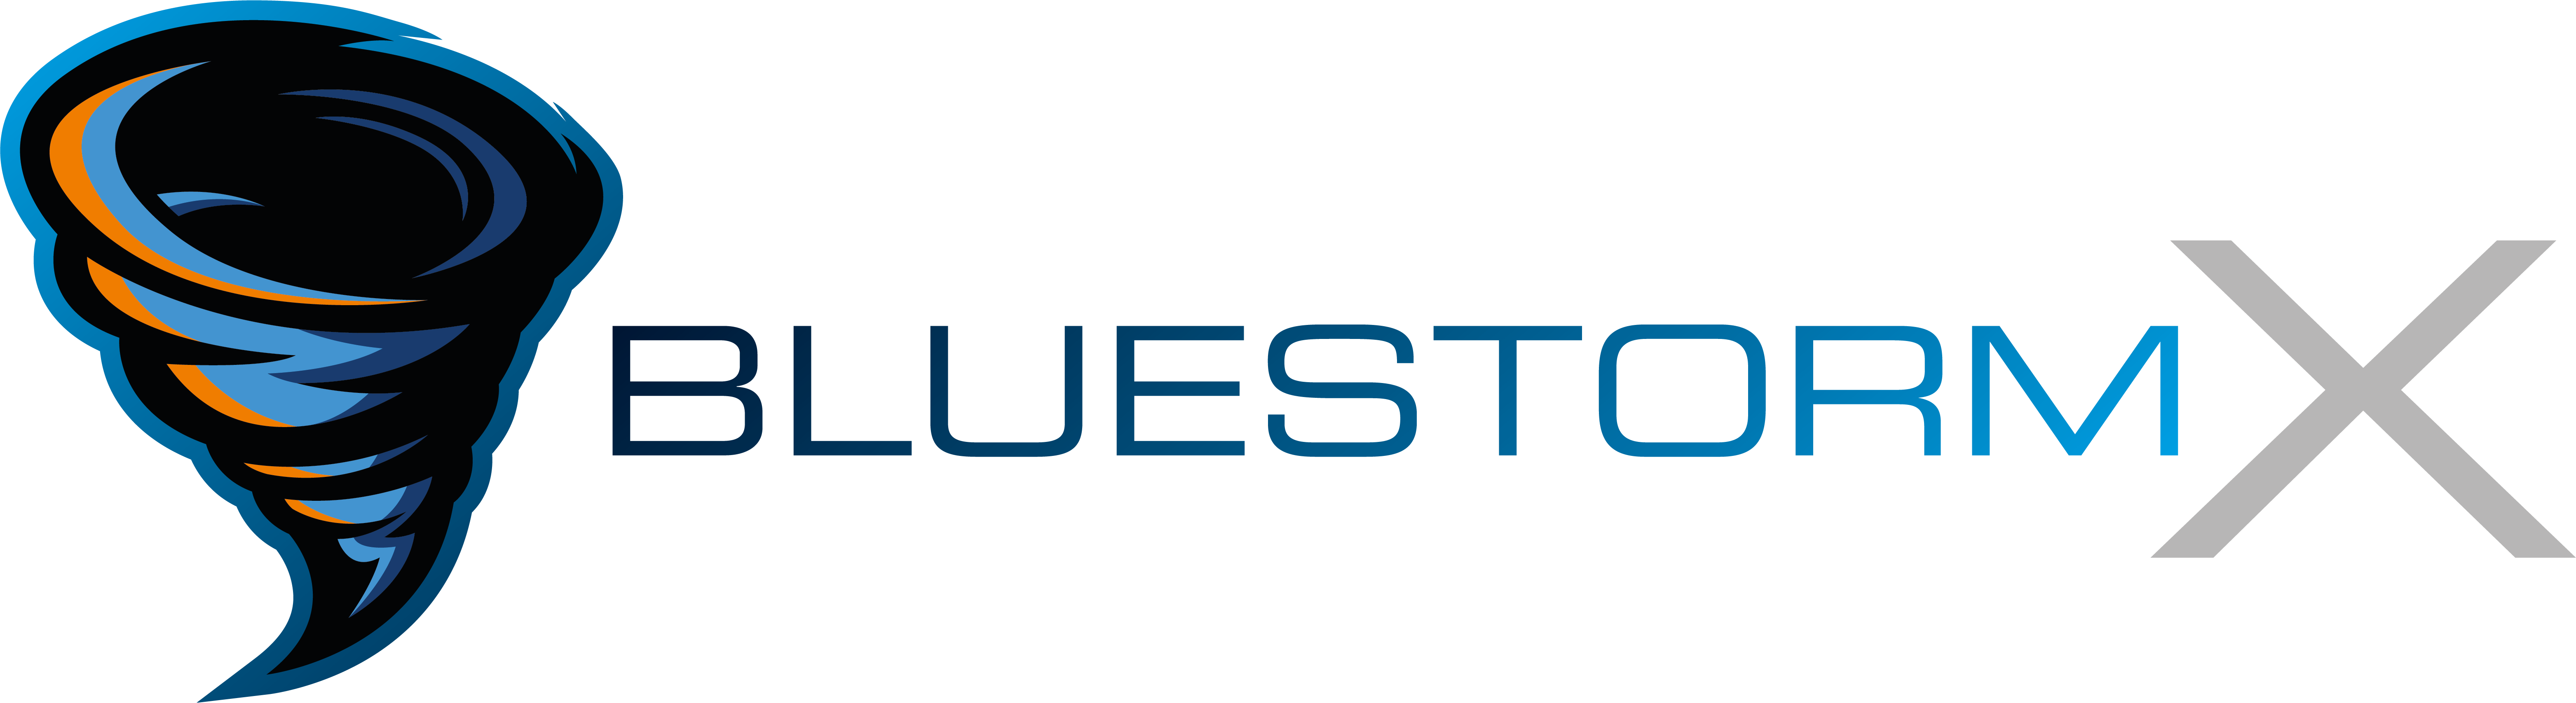 Logo von BlueStorm-X mit Schriftzug rechts daneben